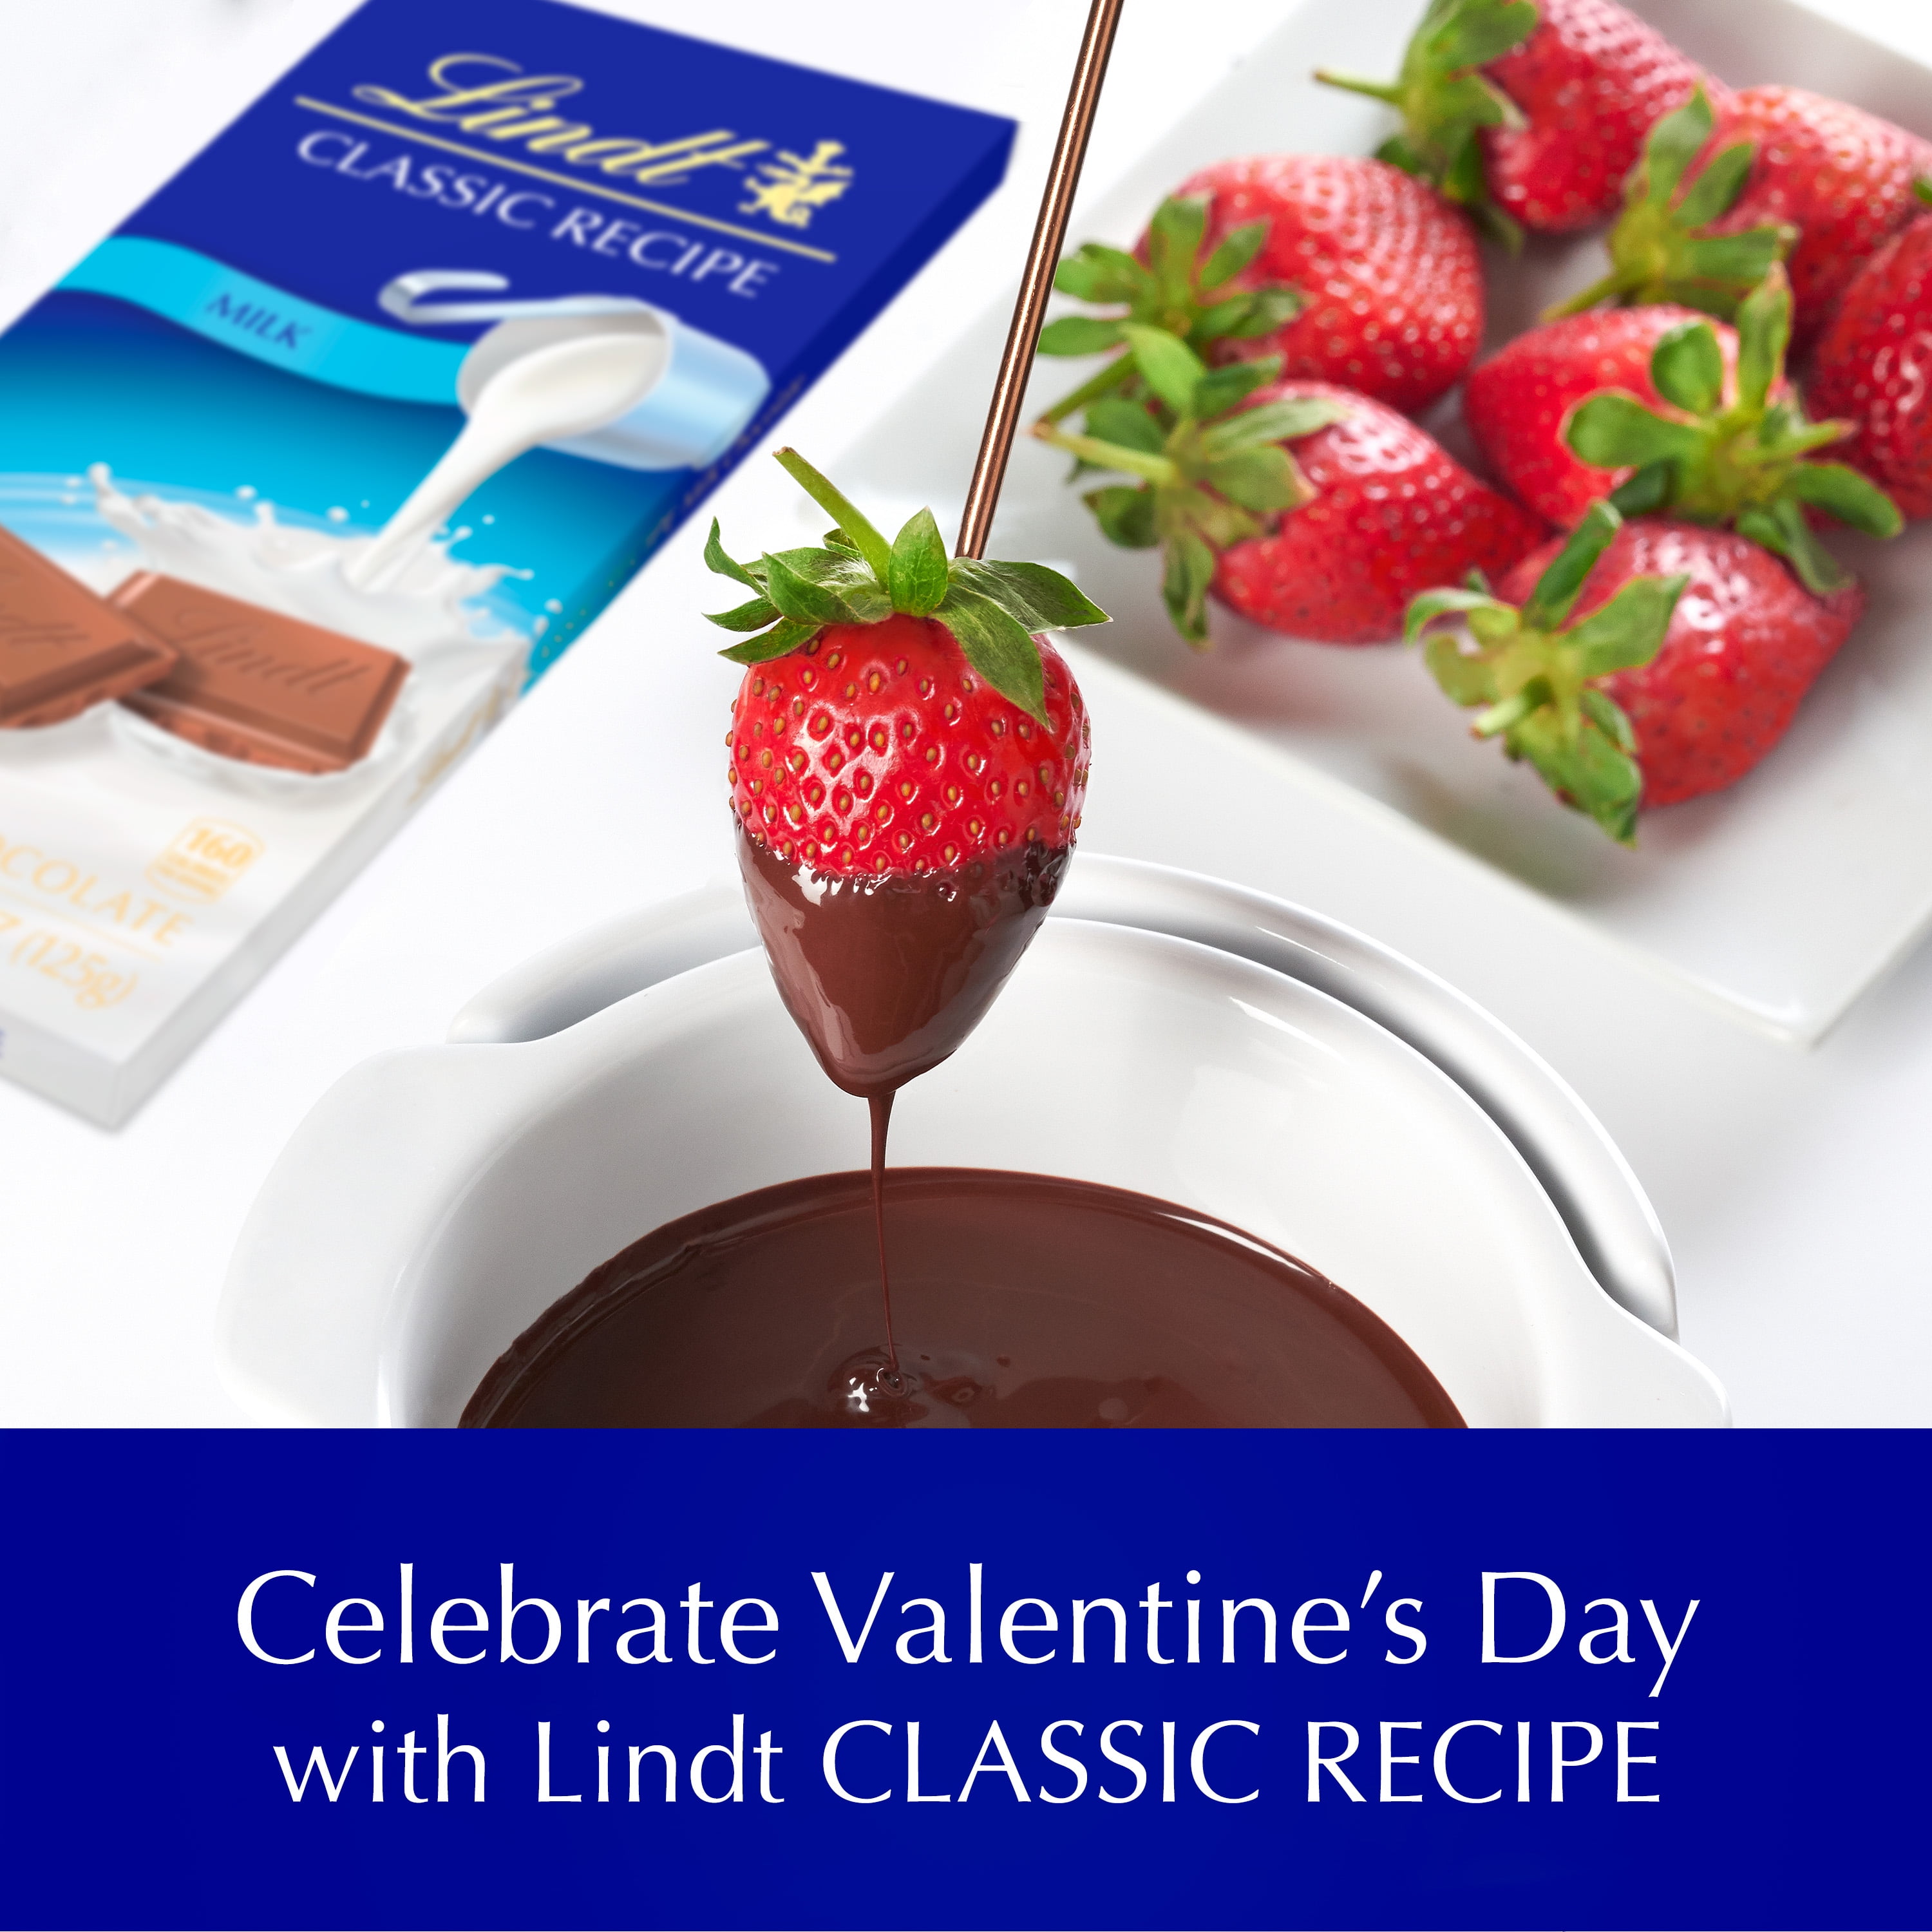 Lindt CLASSIC RECIPE Hazelnut Milk Chocolate Bar, Valentine's Day Candy,  4.4 oz. 